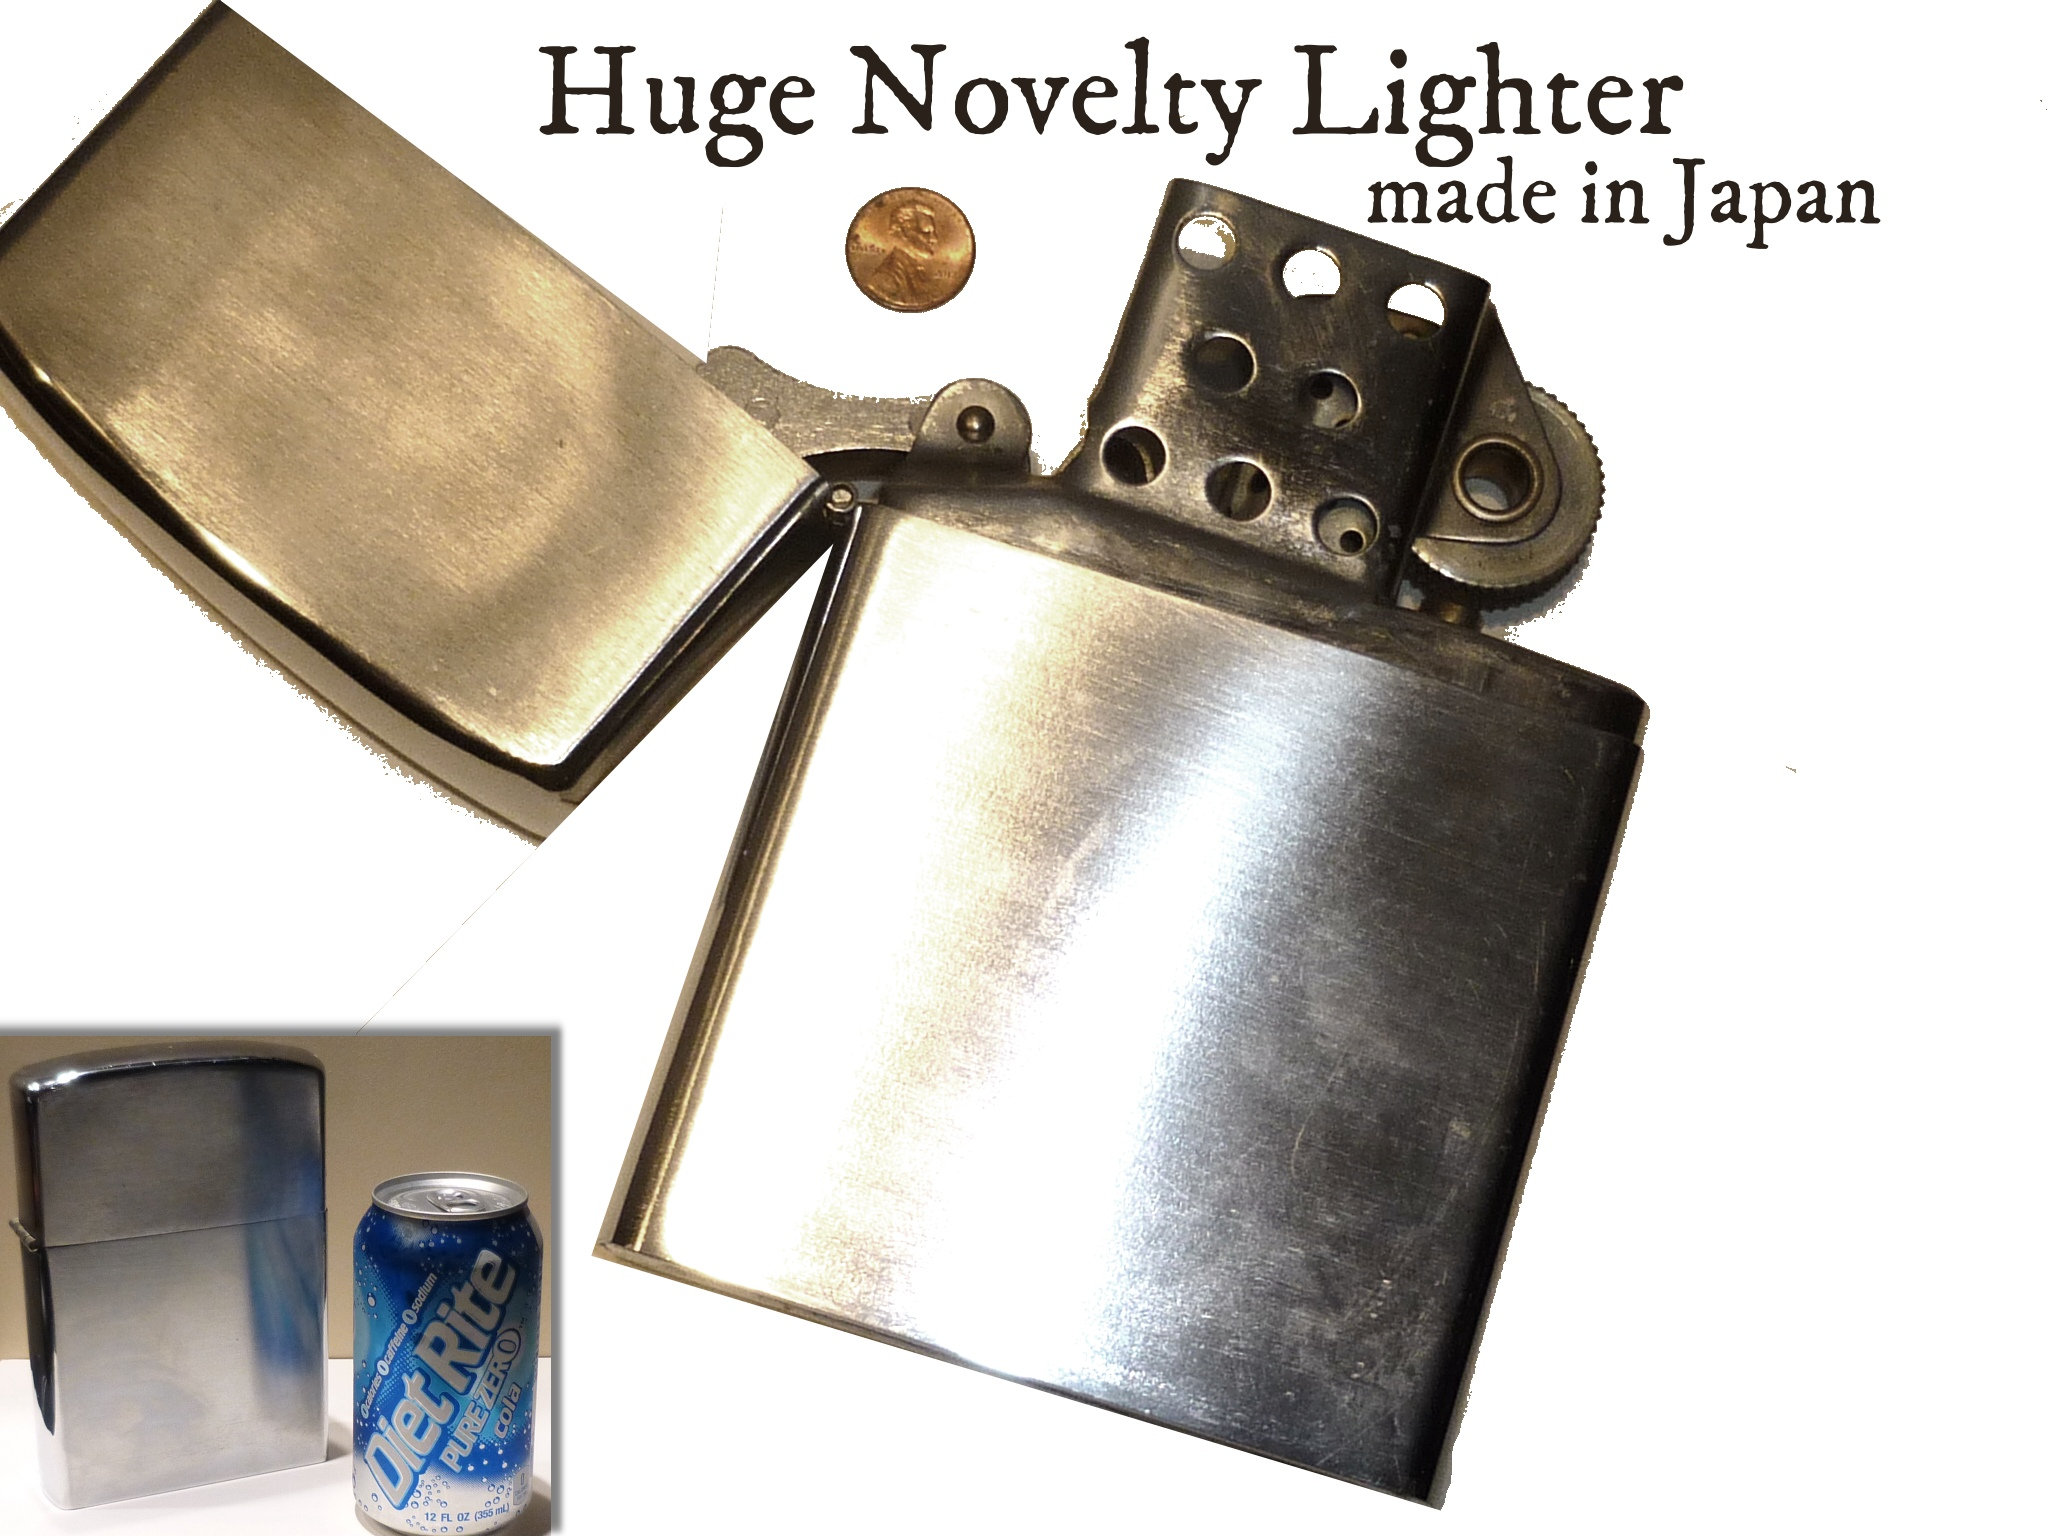 Genoplive Blive opmærksom Klassificer Huge Oversized Lighter. NOT TESTED. Vintage Novelty Made in - Etsy